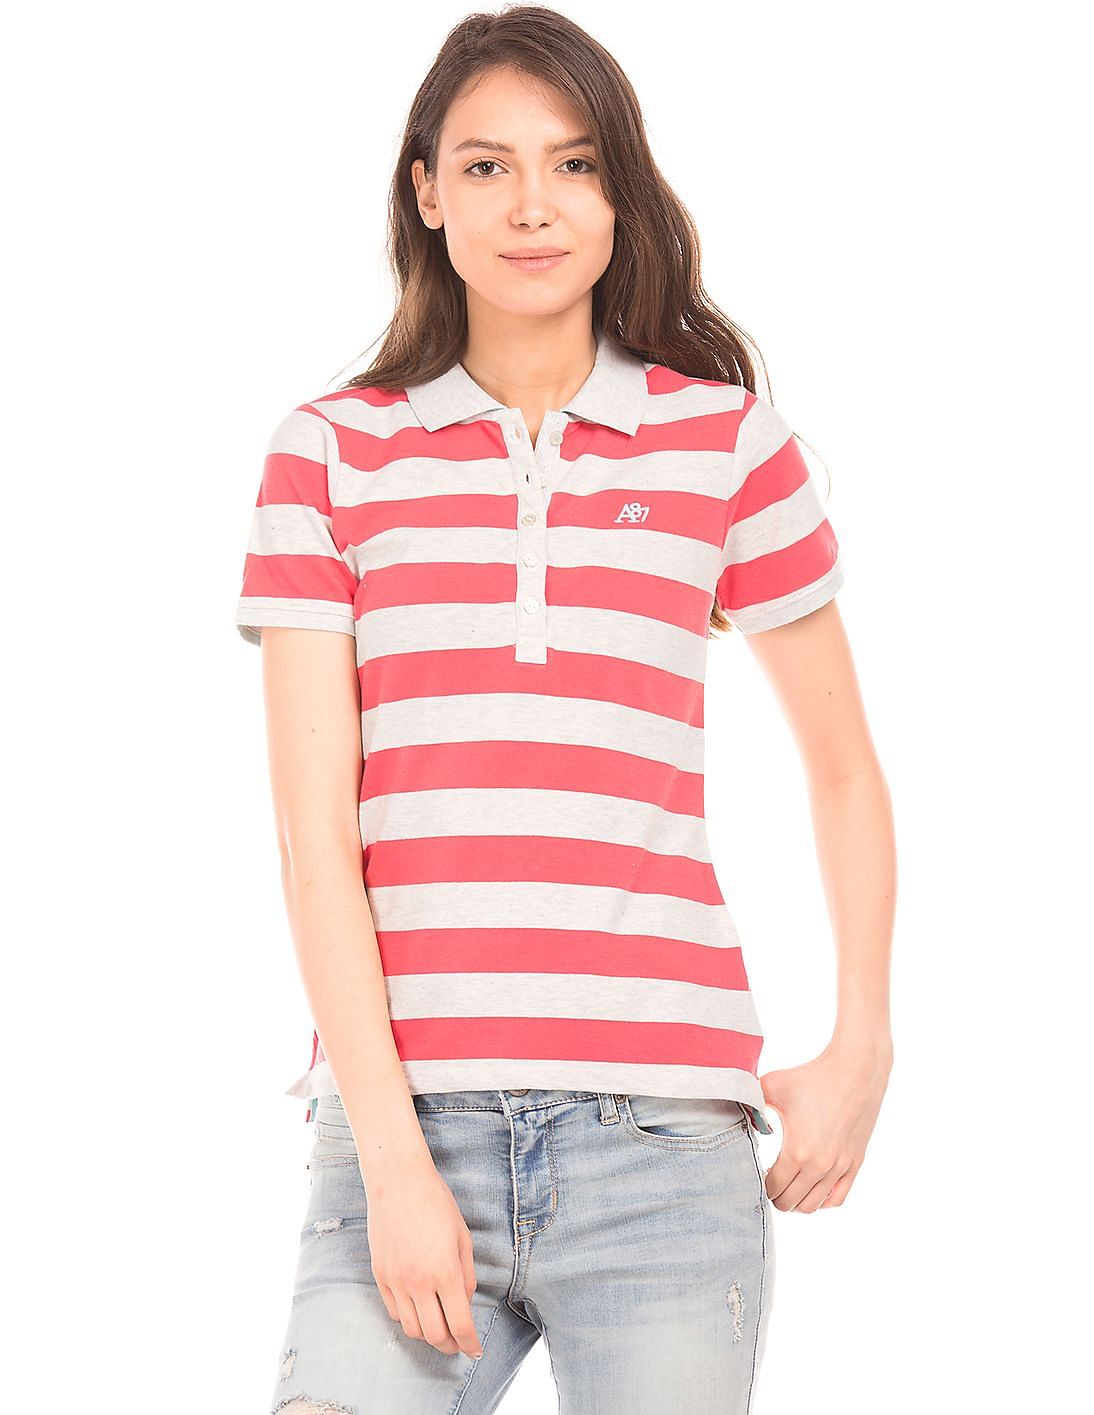 Buy Aeropostale Striped Pique Polo Shirt - NNNOW.com